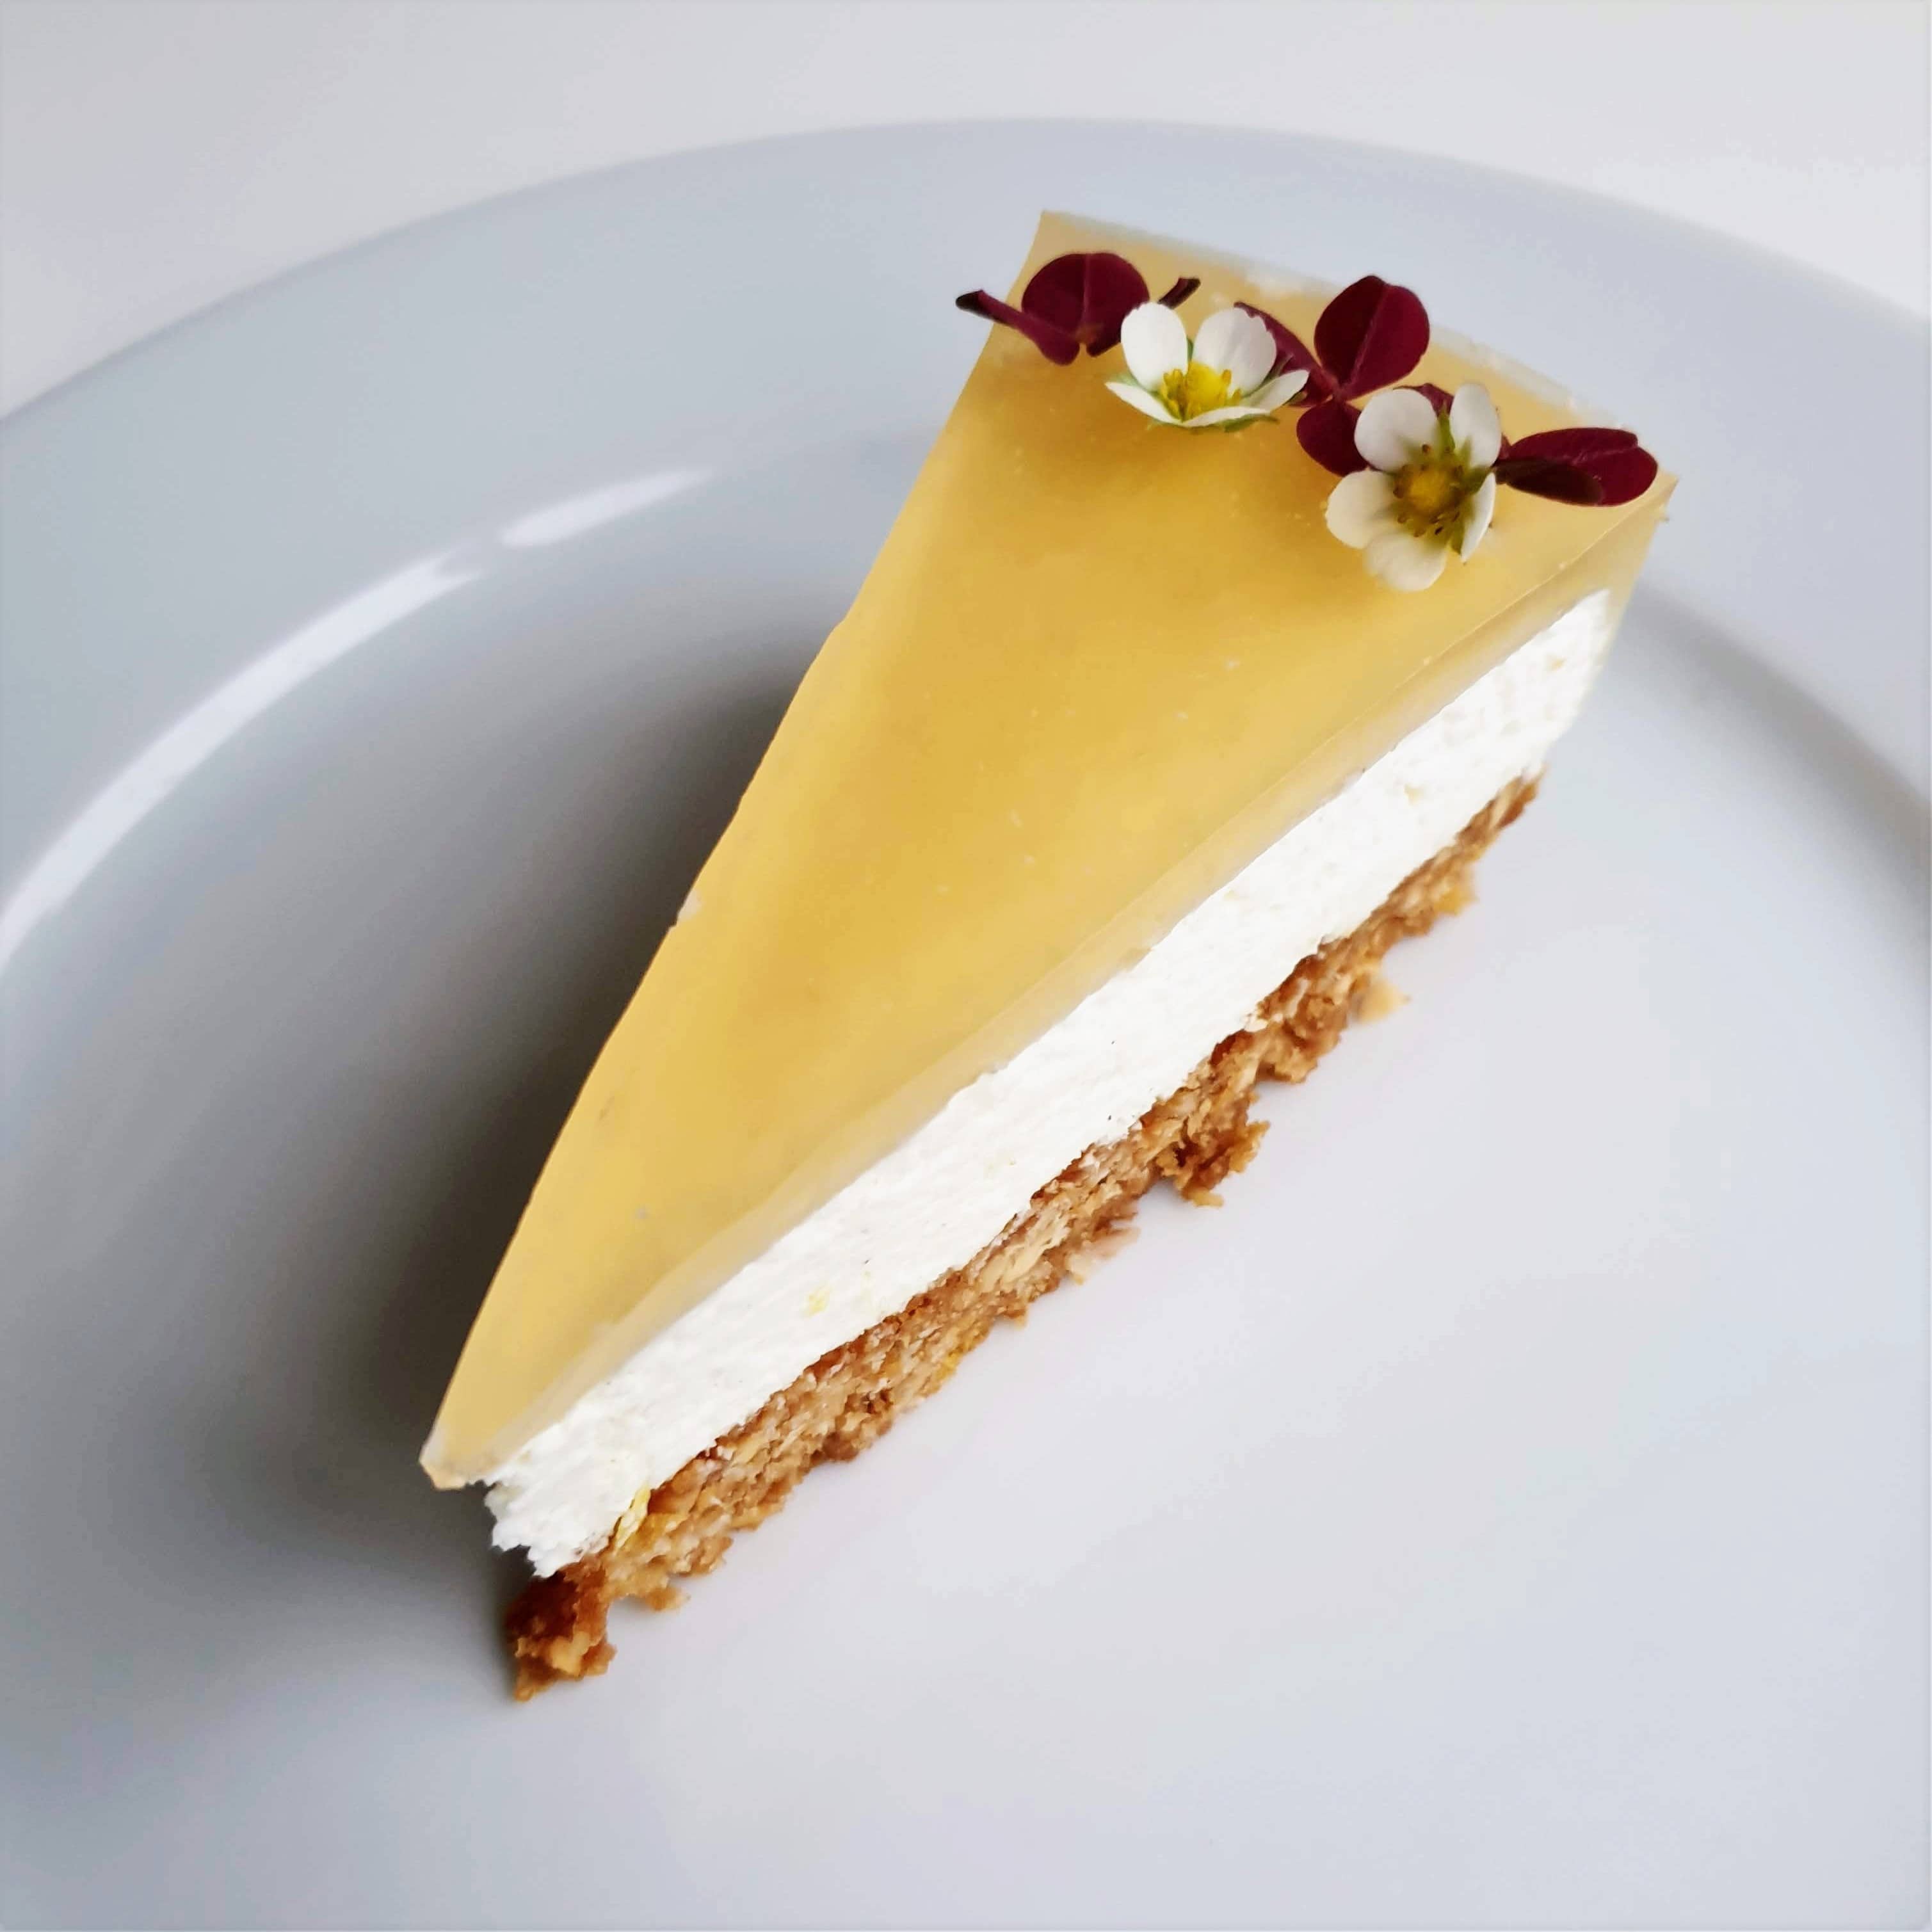 Cheesecake med citron - en lækker cheesecake med myslibund og æblegelé. Du kan servere den lækre cheesecake året rundt, spis den til kaffen, tag den med på arbejdet, server den til påskefrokosten, på skovturen, til fødselsdagen, på en søndag... Find opskrifter, print og inspiration til årets gang på danishthings.com © Christel Parby - Danish Things #DanishThings #cheesecake #myslibund #mysli #citron #citronmousse #æblegele #æble #forårskage #påske #påskekage #skovtur #efterår #luftig #lækker 